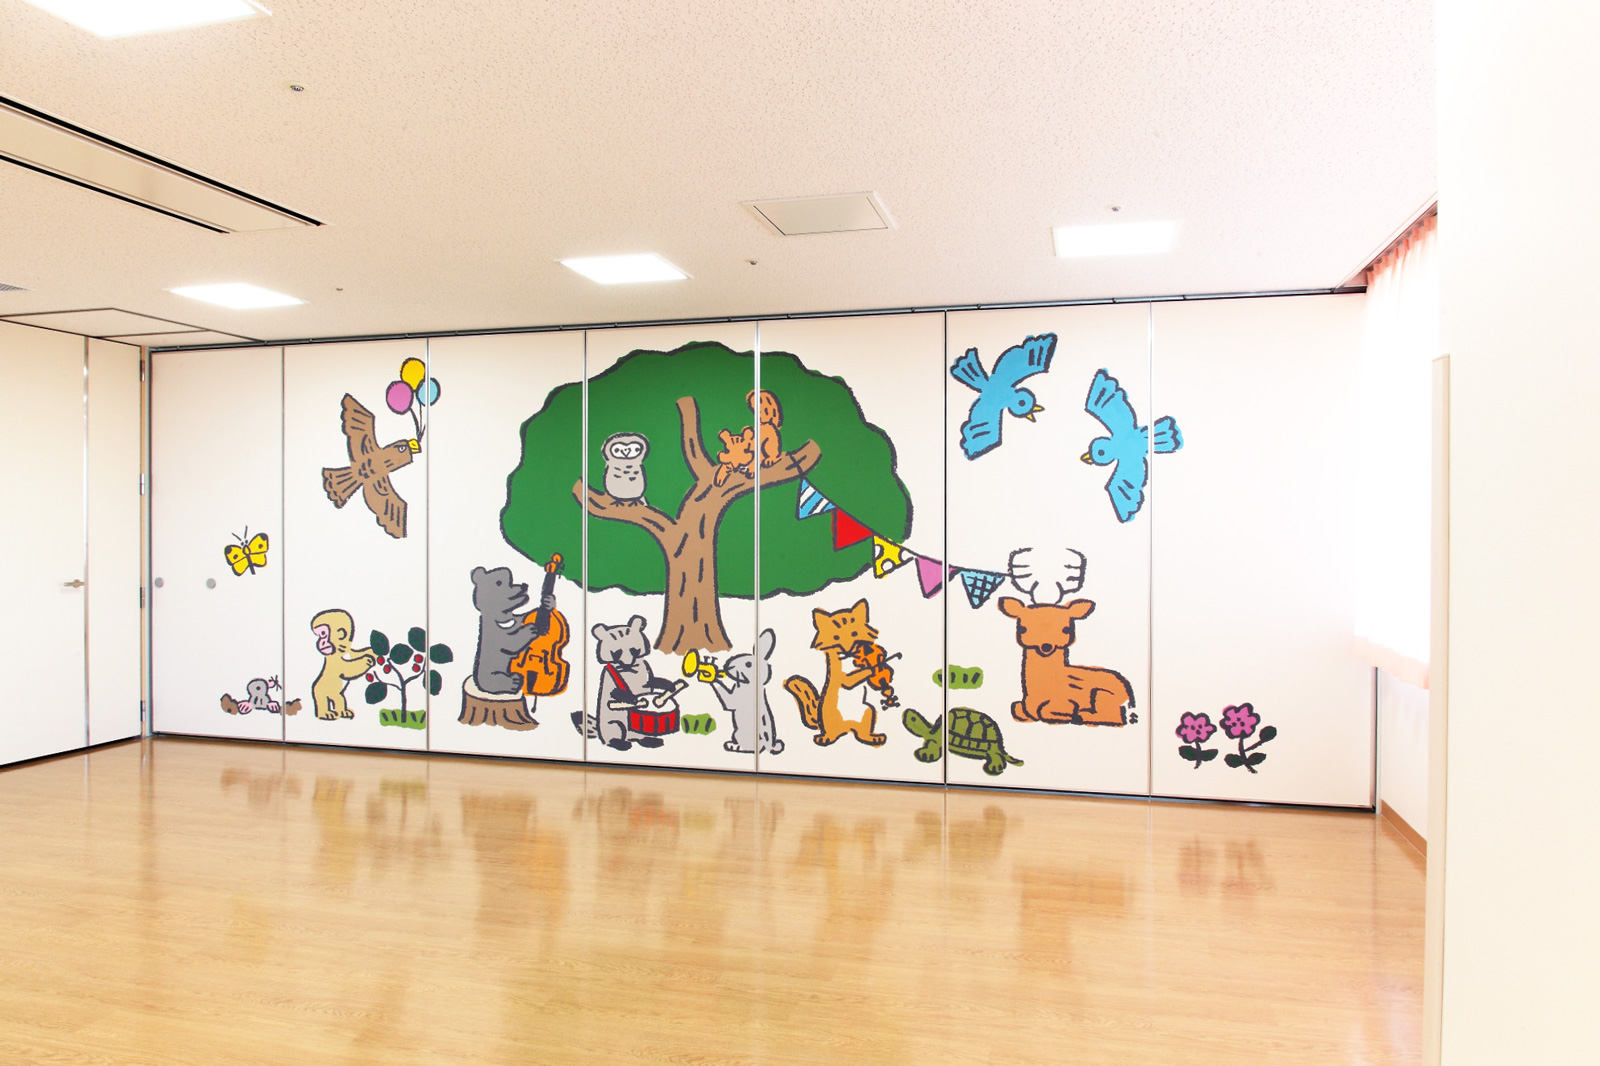 ホスピタルアート　奈良県医科大学附属小児センター　壁画「森のフェスティバル ー笑顔をつなげてー」